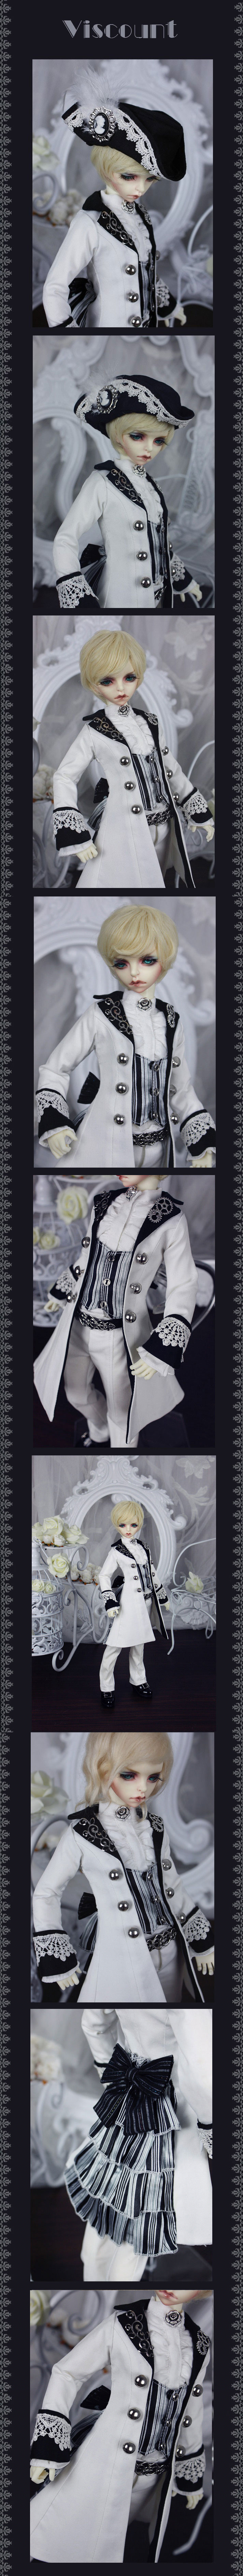 ドール衣装セット MSDサイズ人形用 【Buffalo】 Viscount 白色